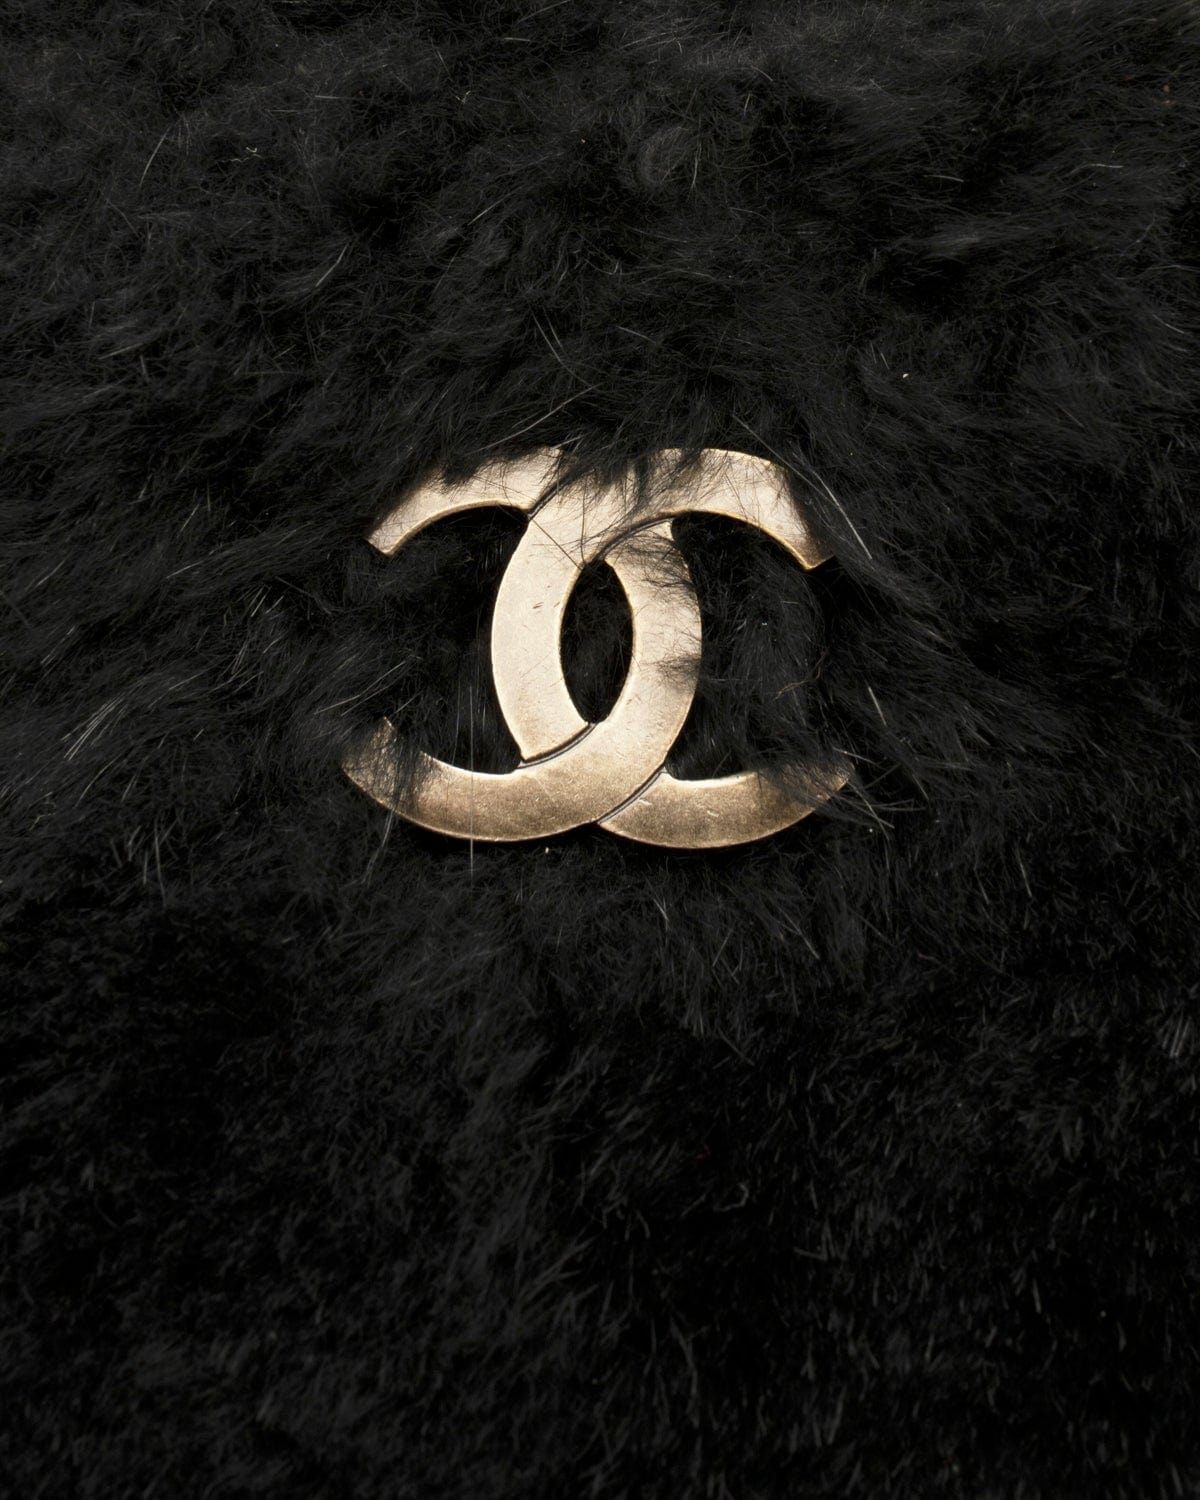 Chanel Chanel Black Fur Soft Tote Bag GHW - AGL1509